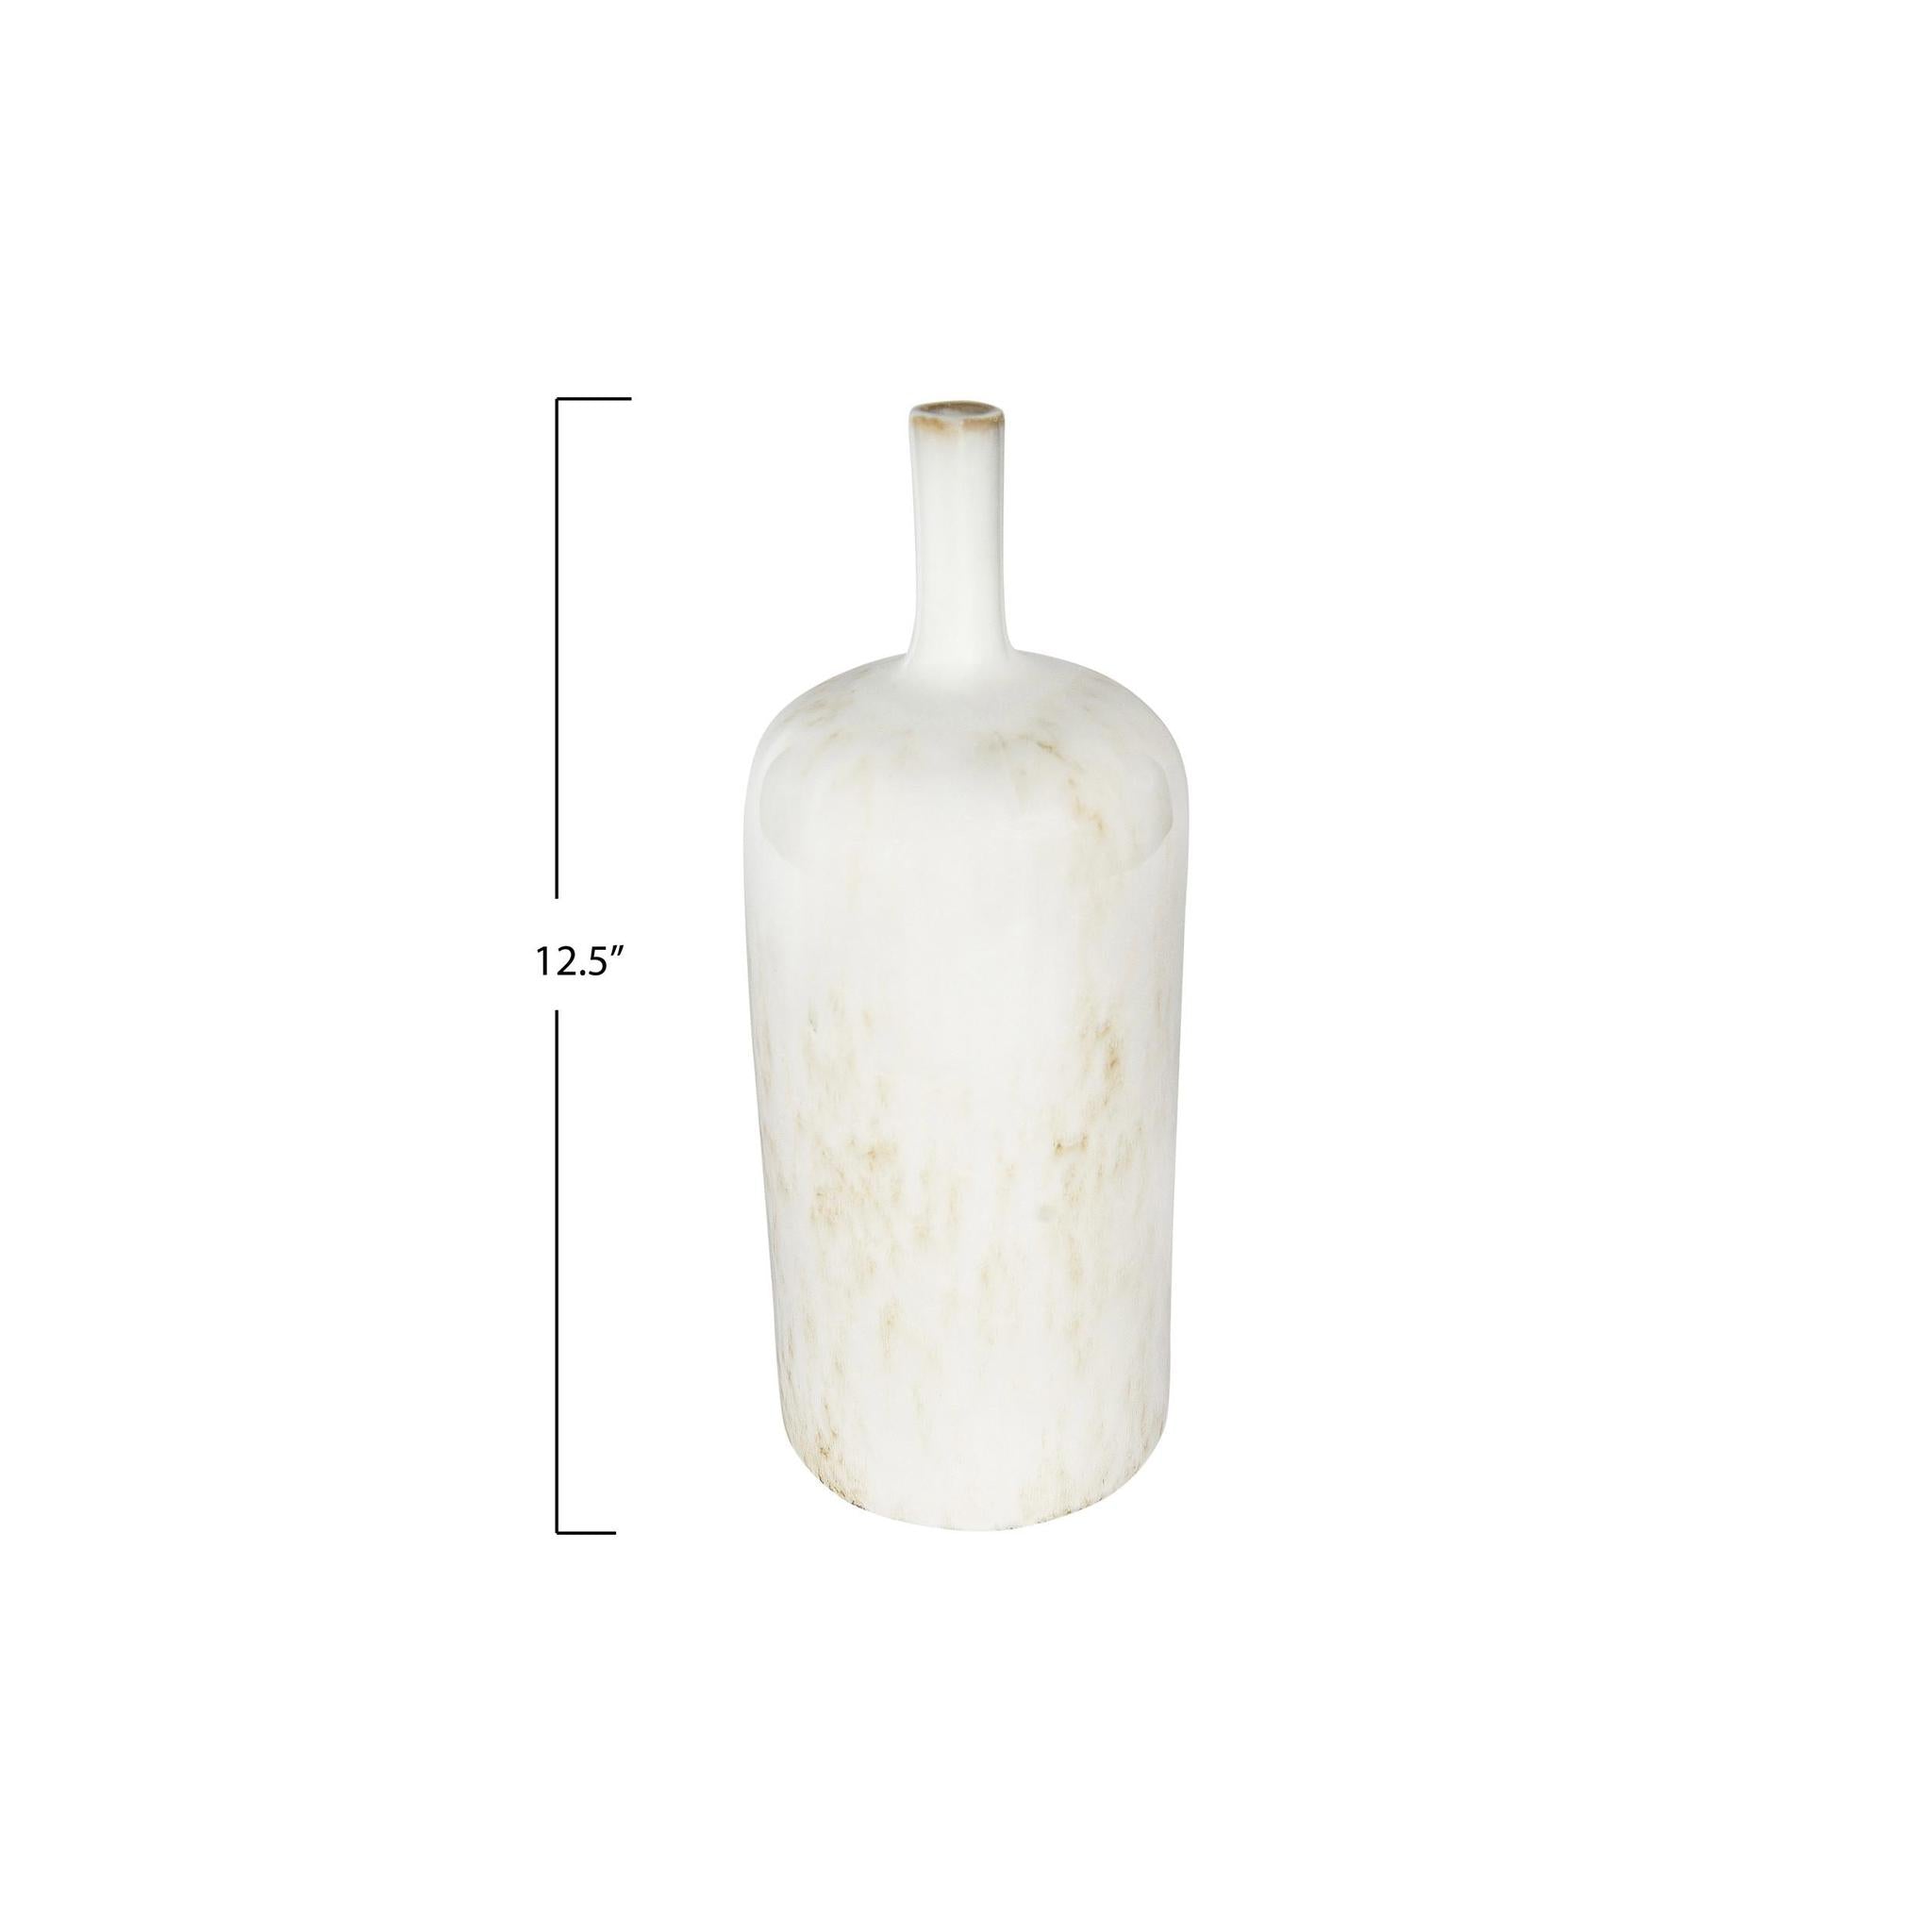 Stoneware vase w/ Thin Neck - White